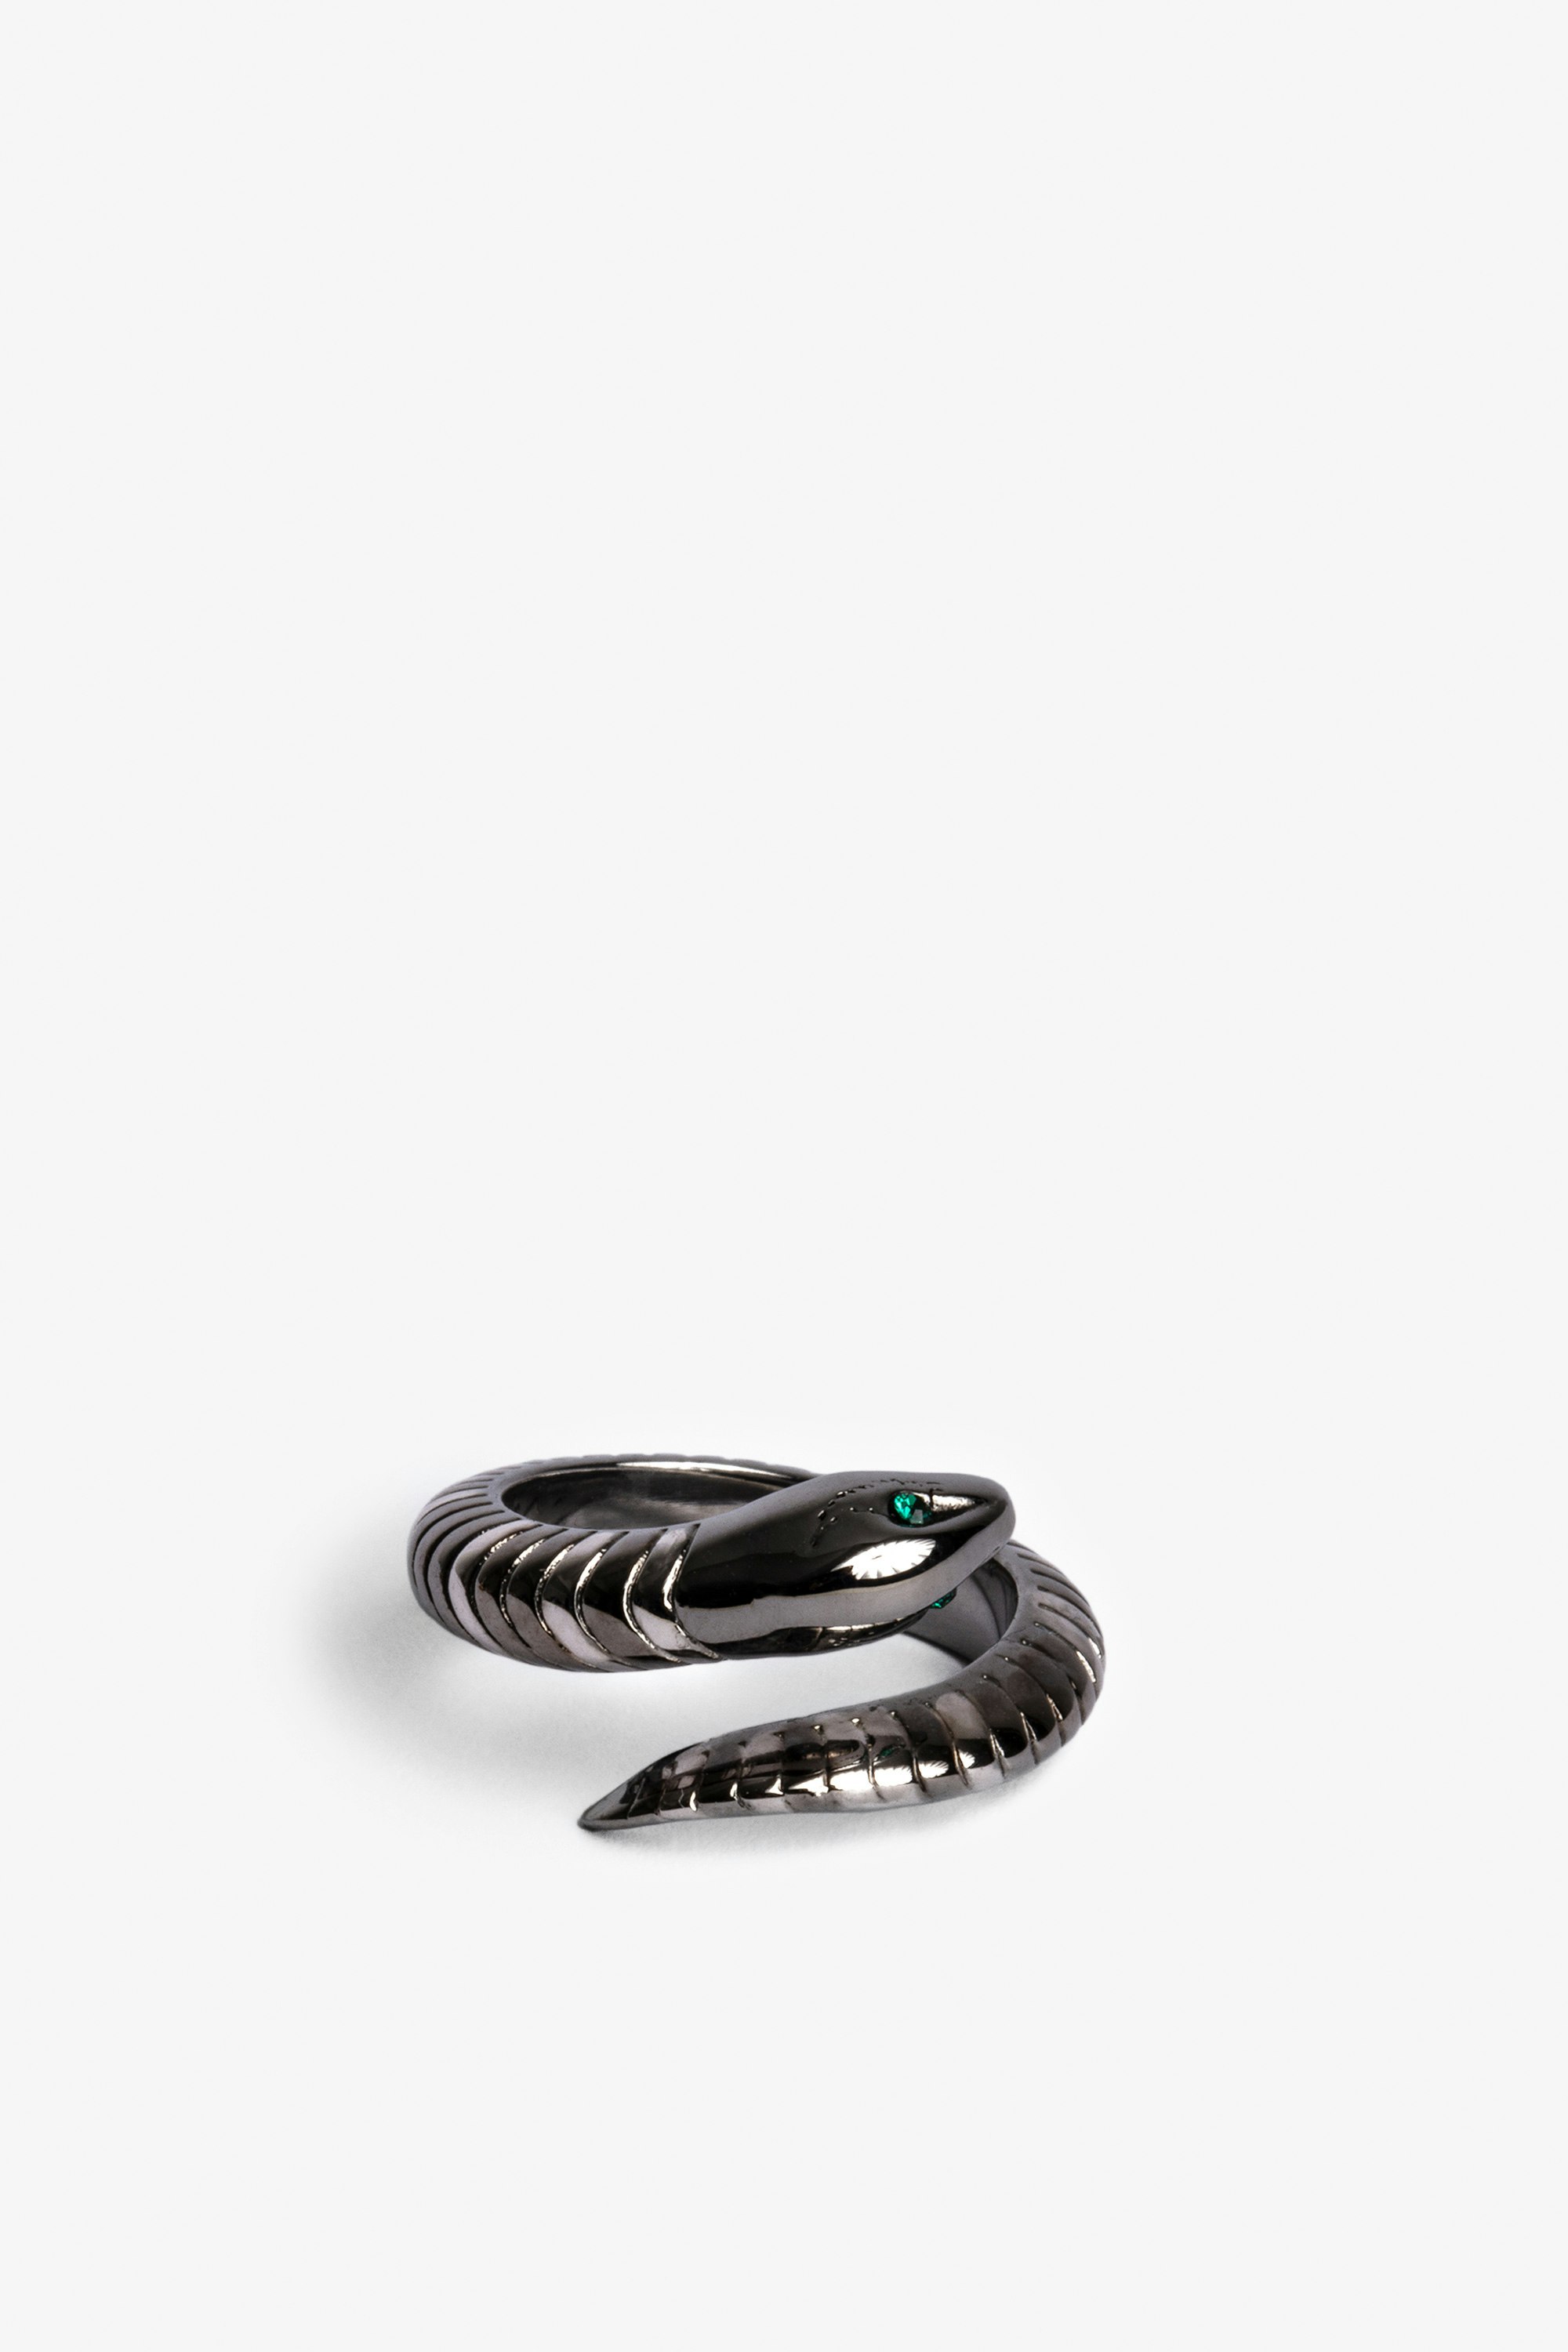 Anillo Snake - Pulsera de latón plateado Snake.